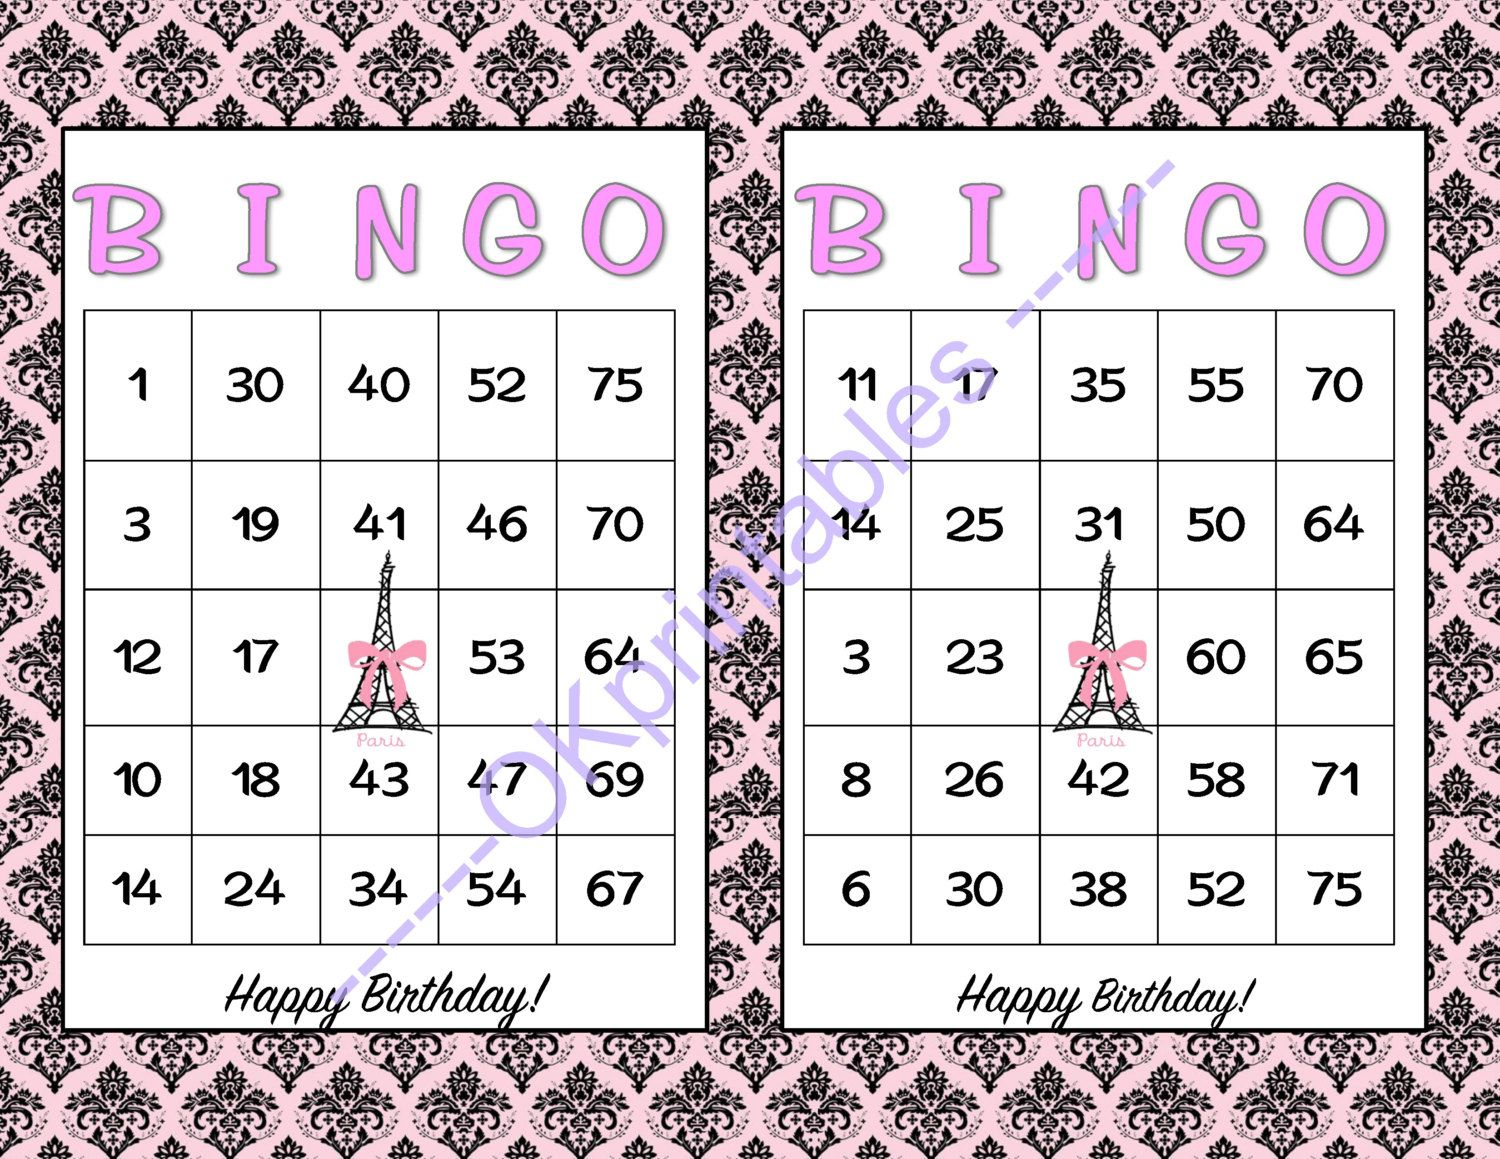 60 Happy Birthday Parisian Party Bingo Cards - Printable